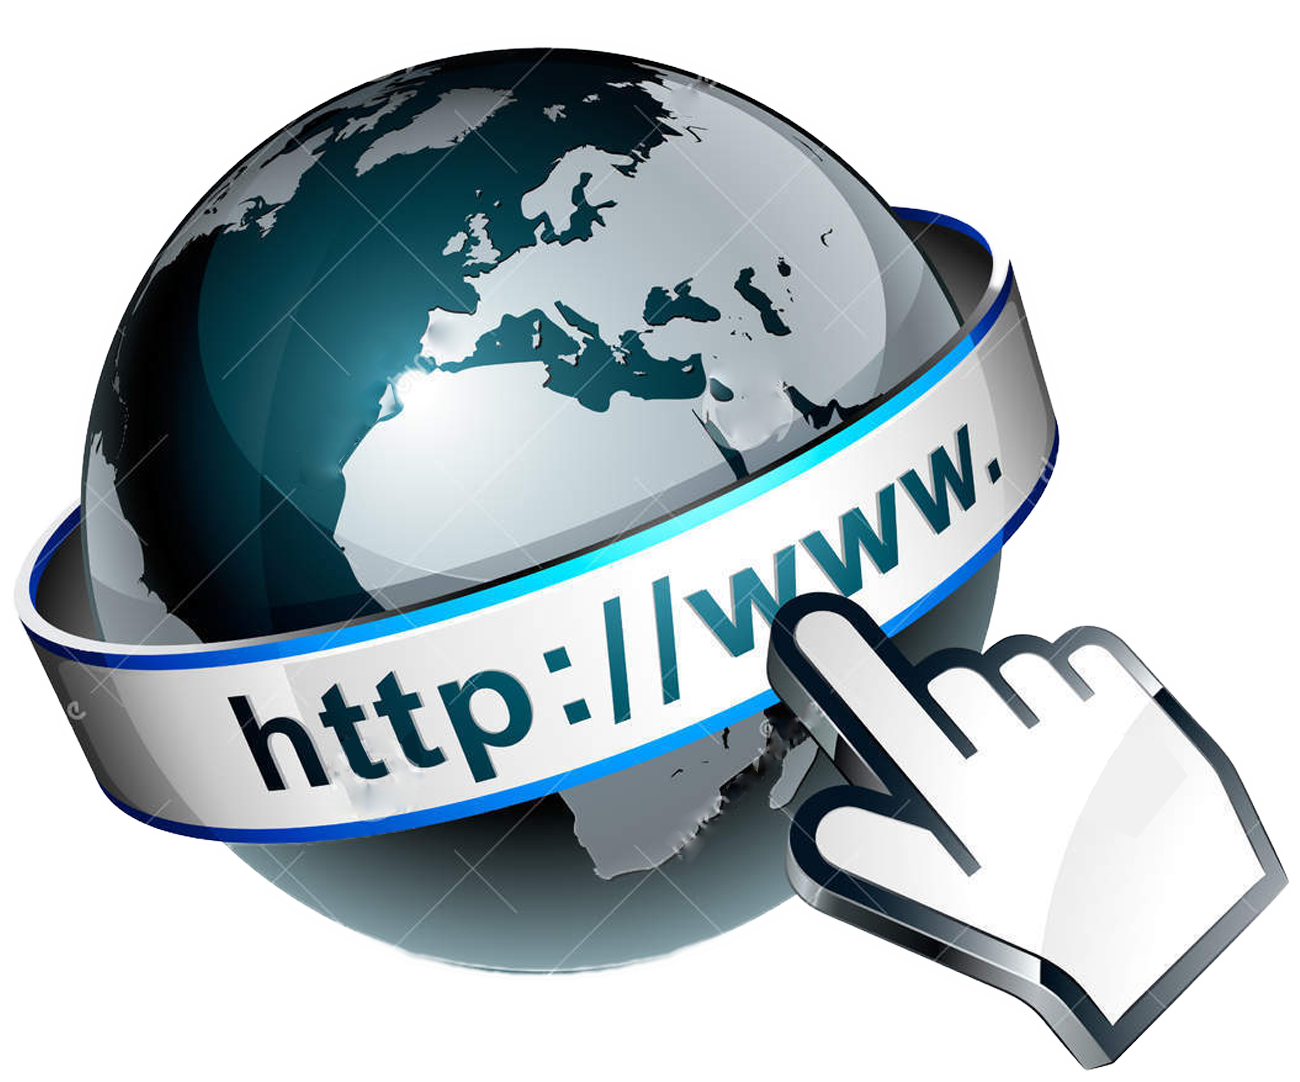 World Wide Web, Internet, Com